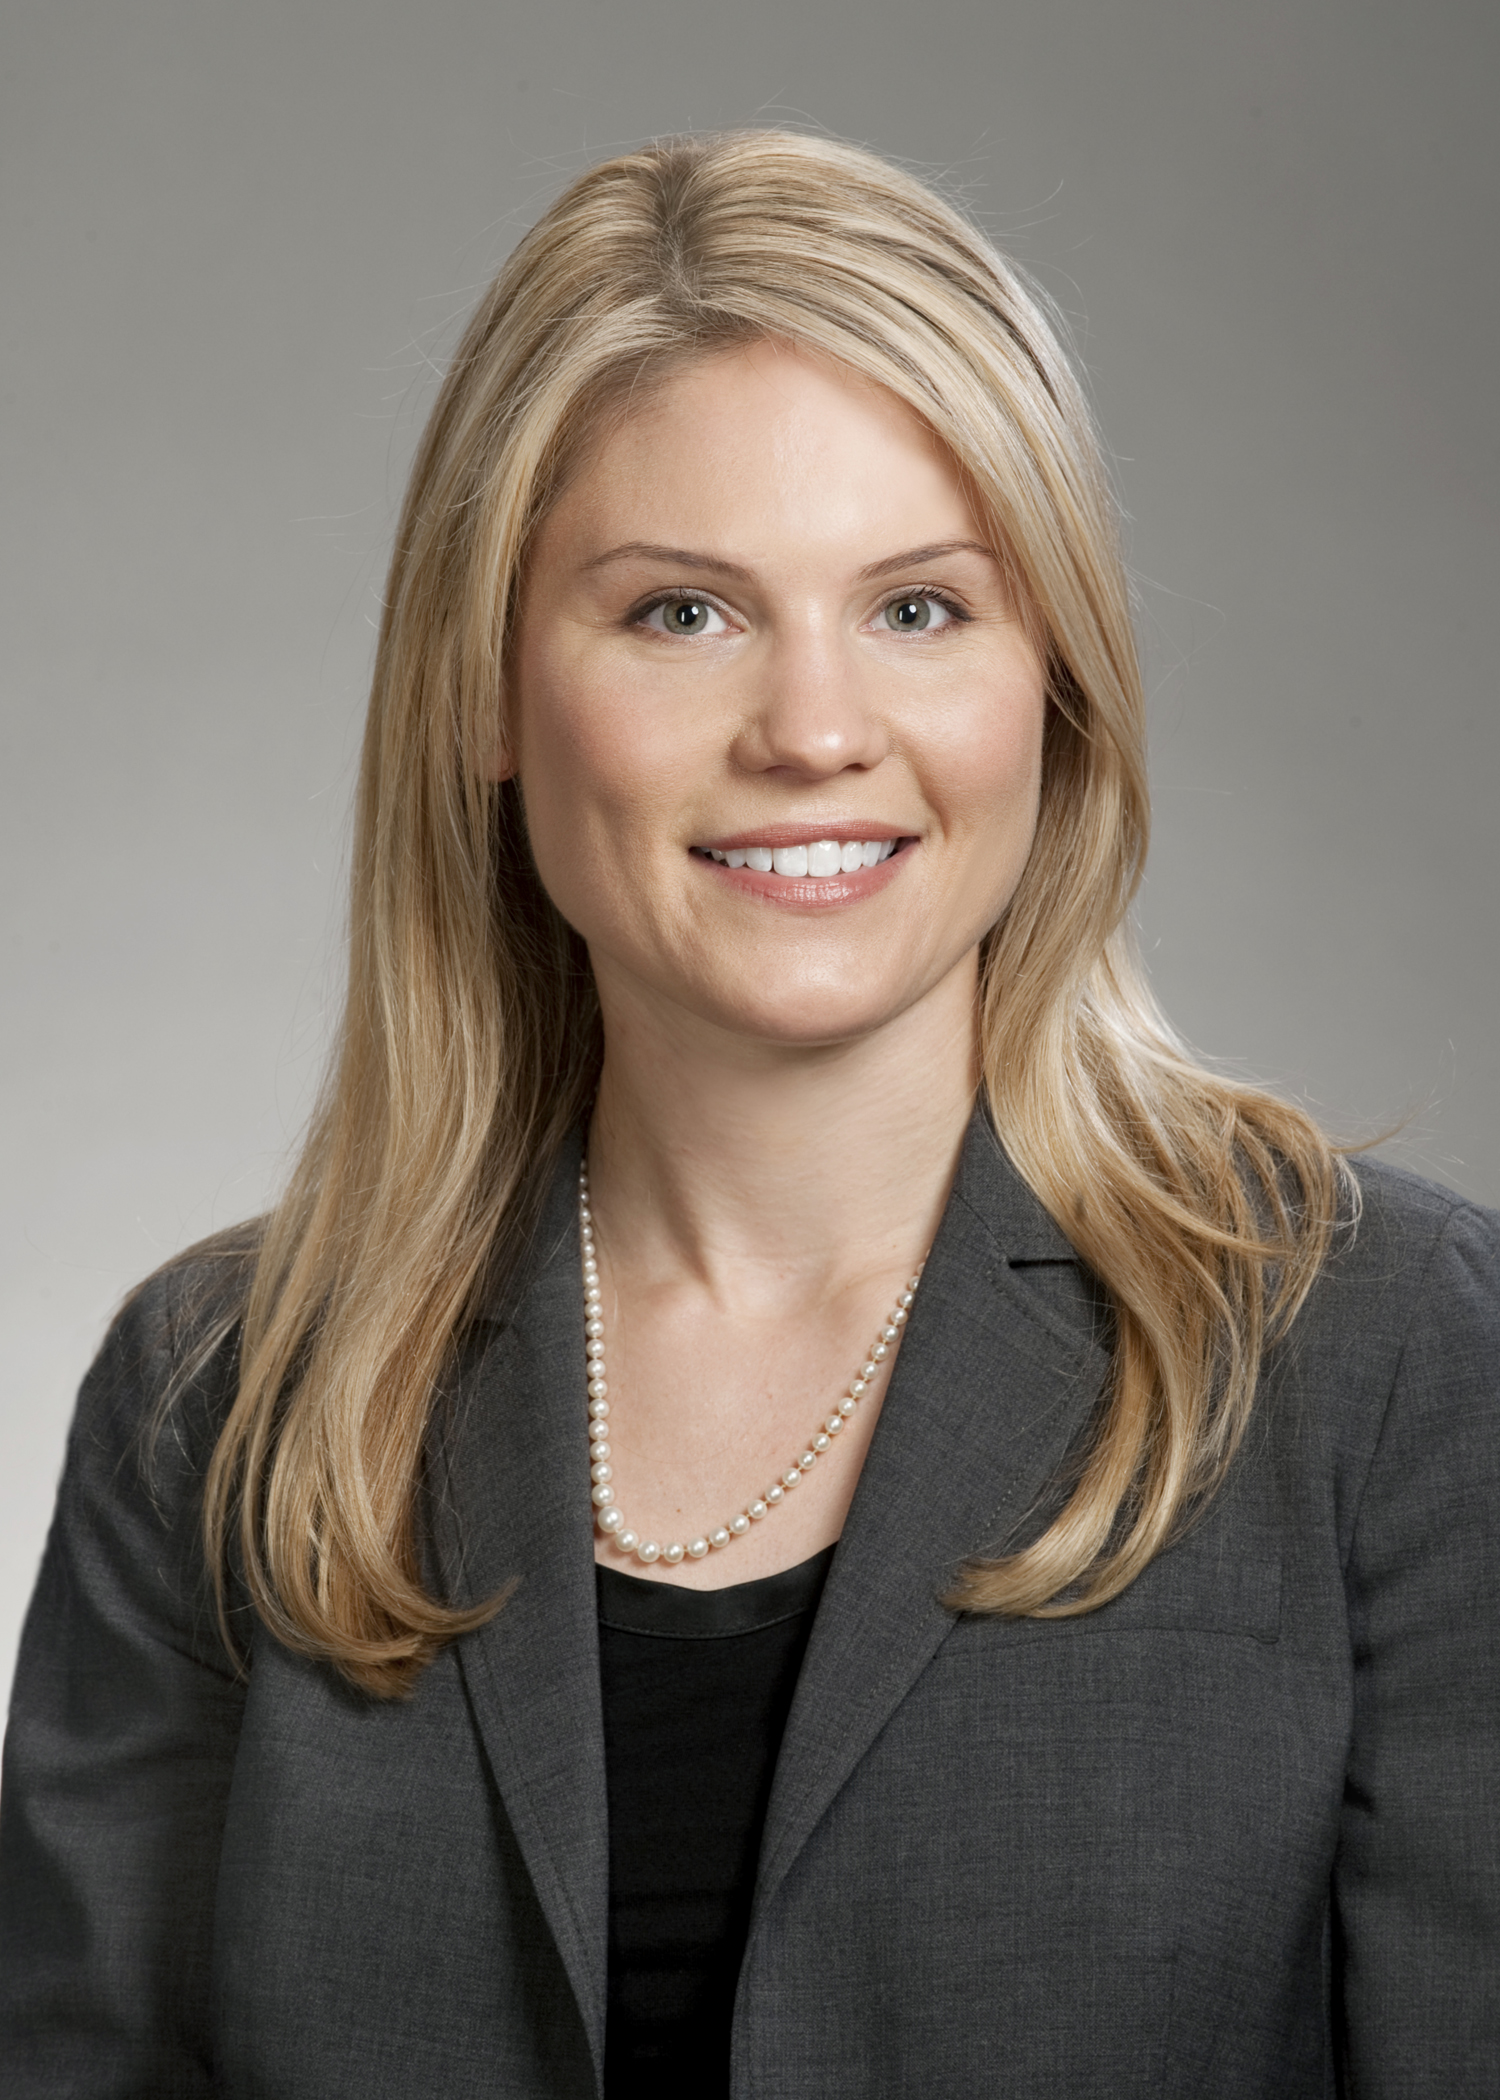 Michigan Auto Law attorney Alison Duffy